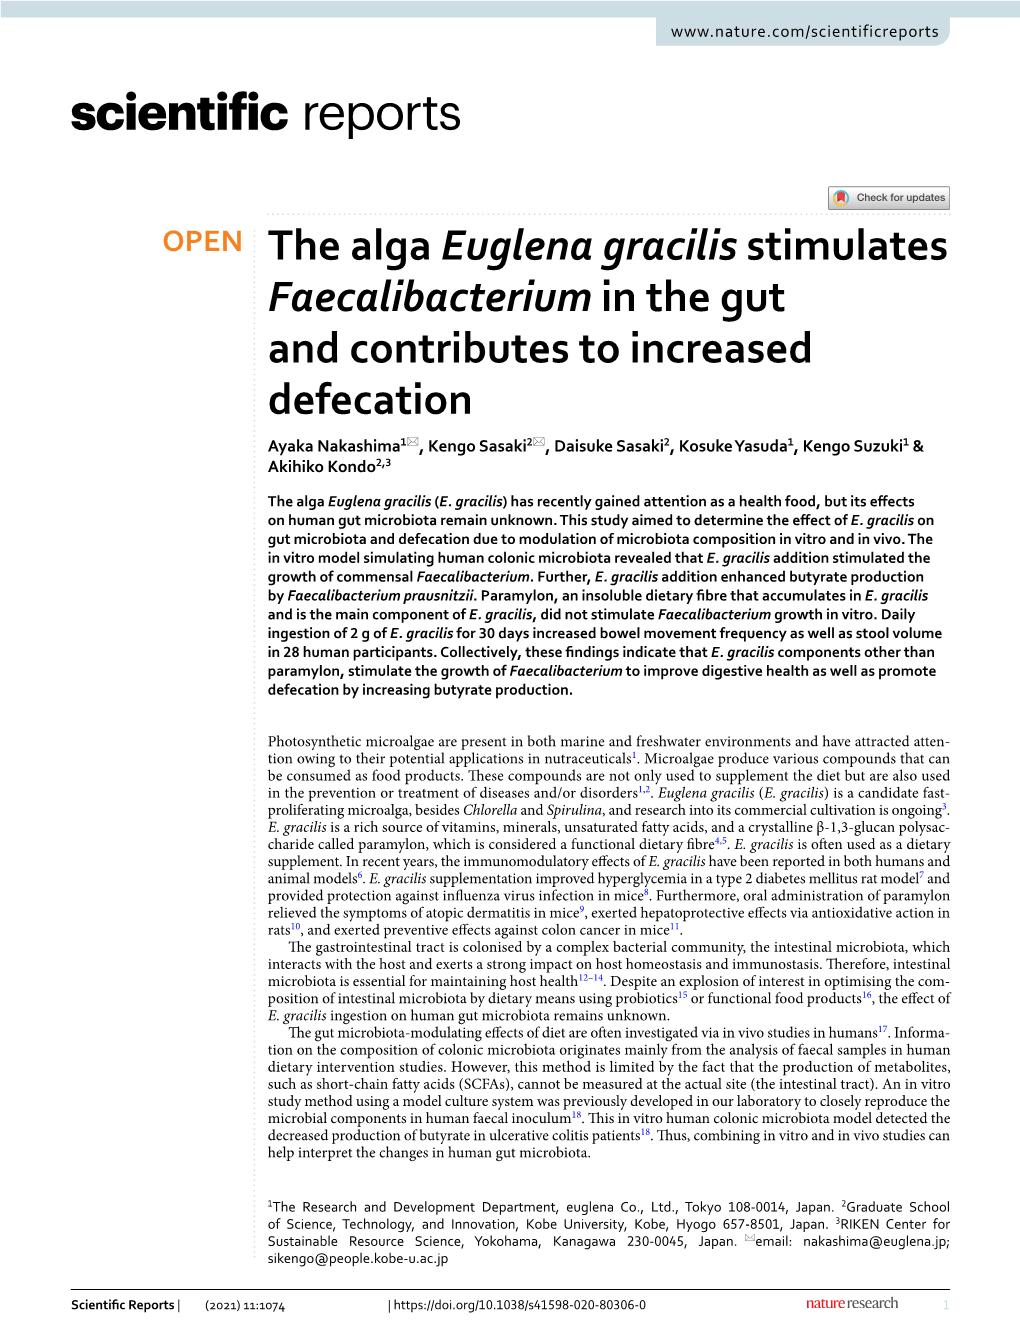 The Alga Euglena Gracilis Stimulates Faecalibacterium in the Gut And